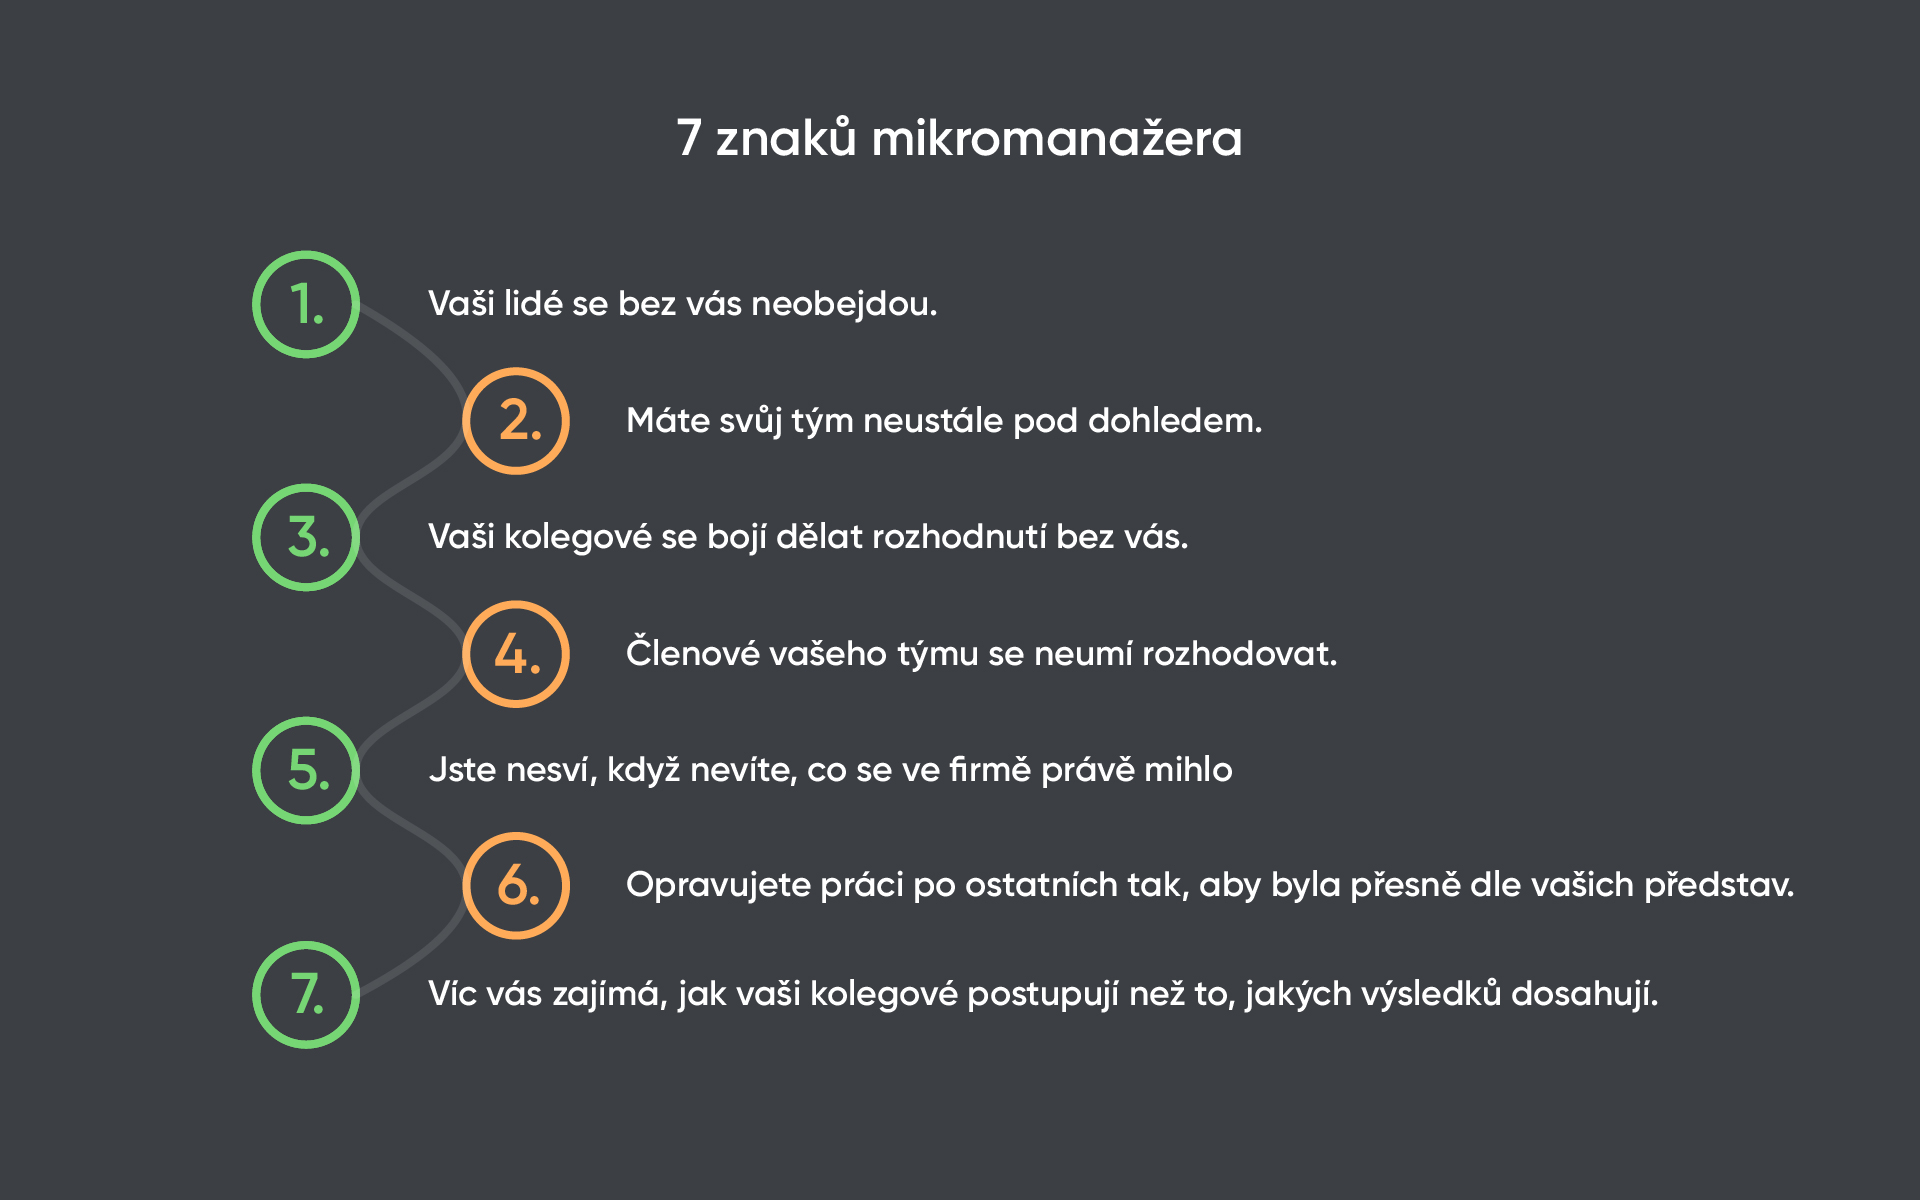 7 znaků mikromanažera